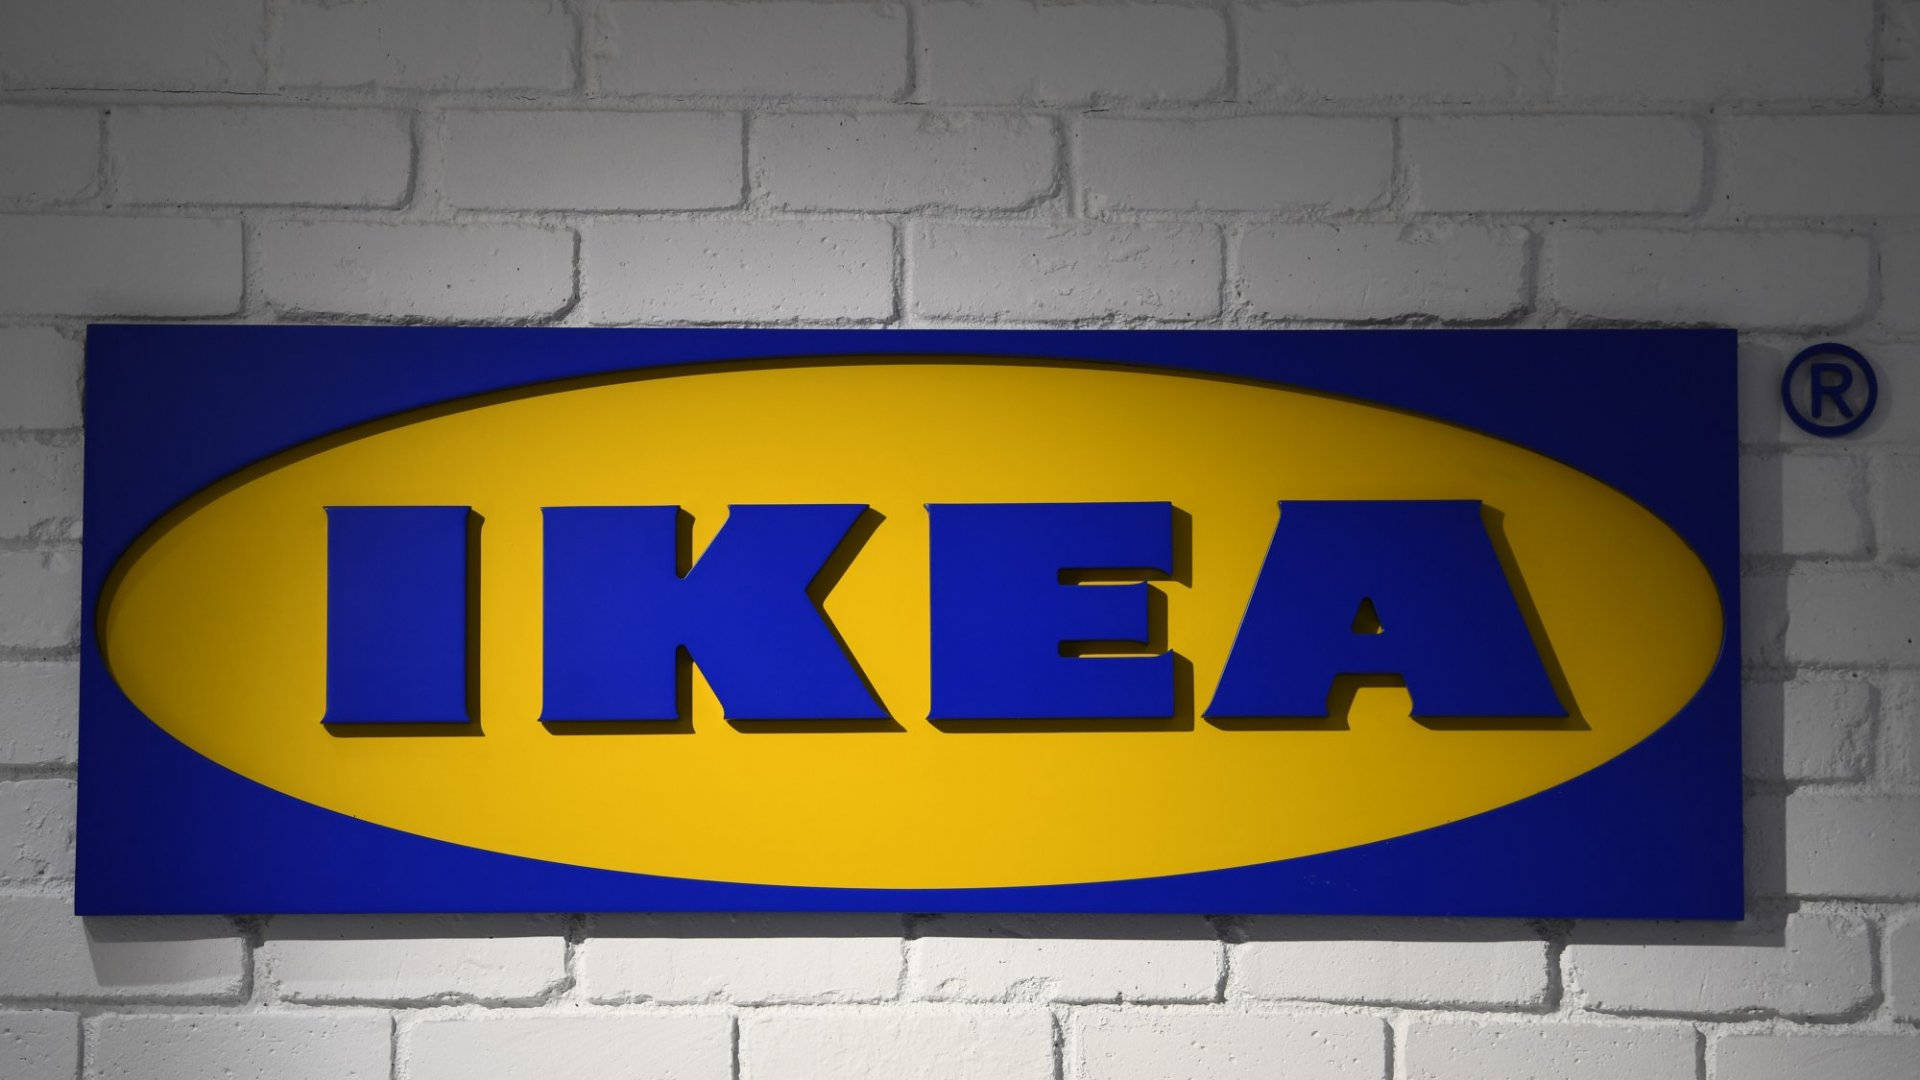 Logode Ikea En Pared De Ladrillos Fondo de pantalla